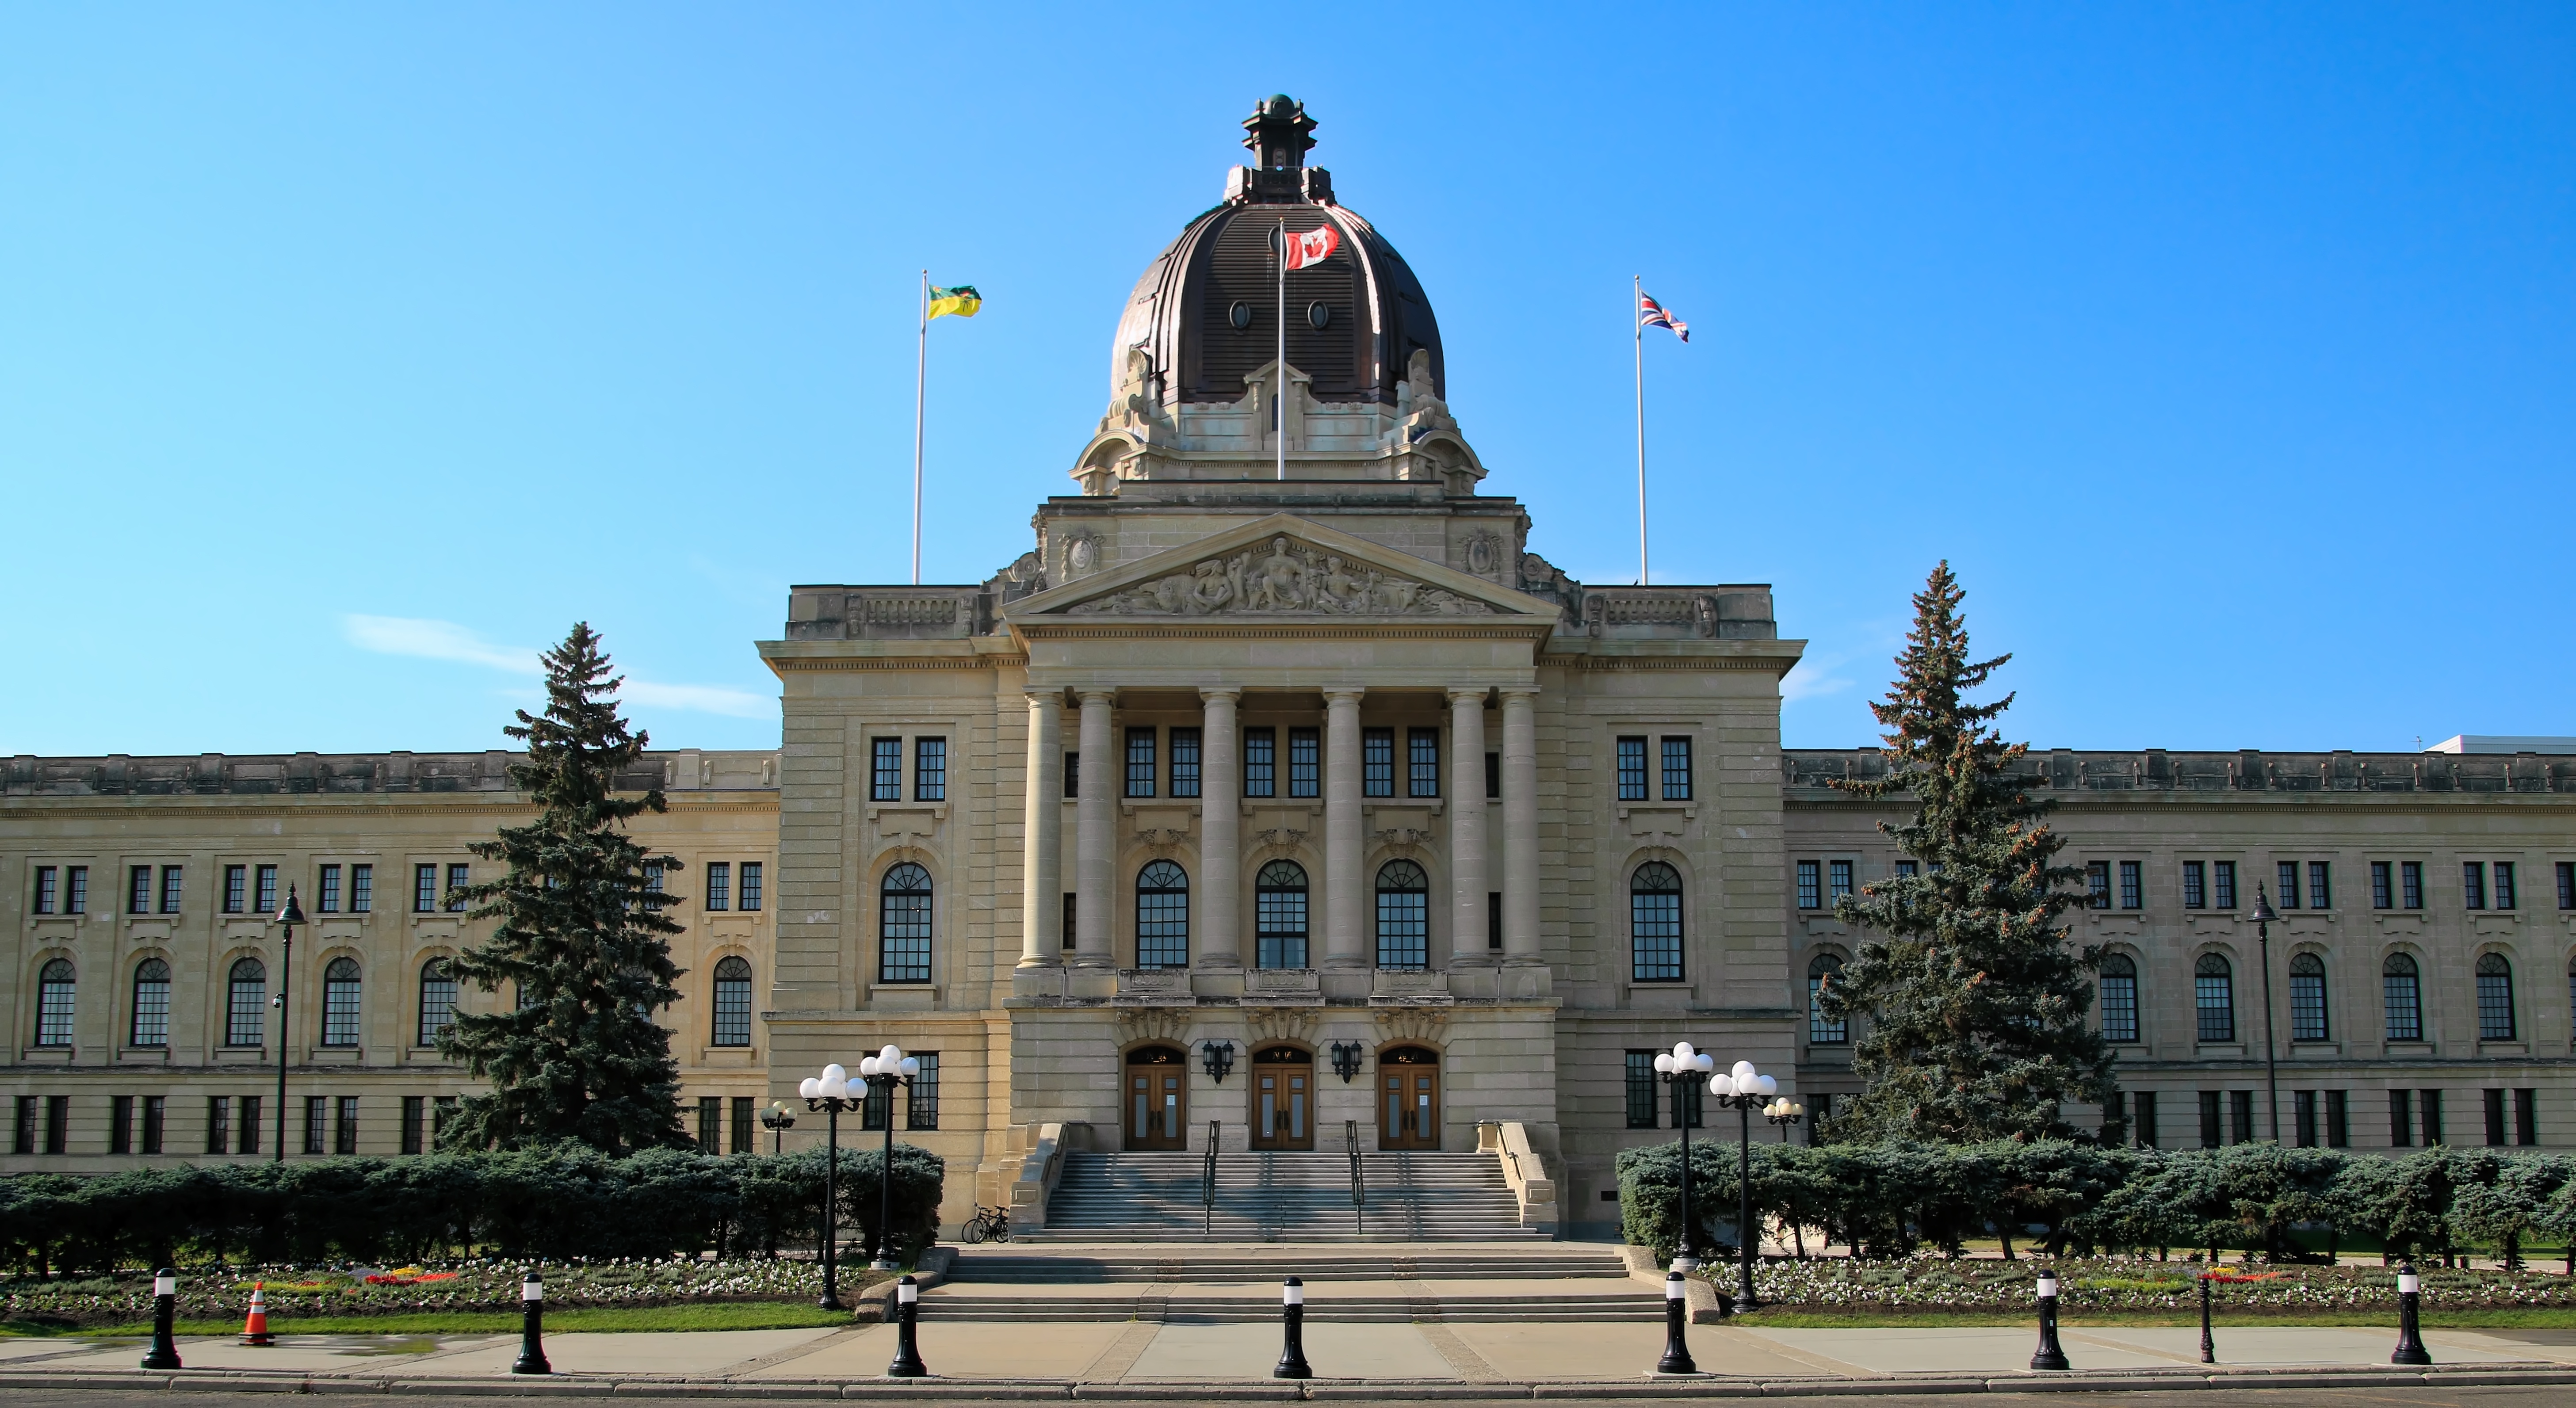 The legislative building in Regina, Saskatchewan